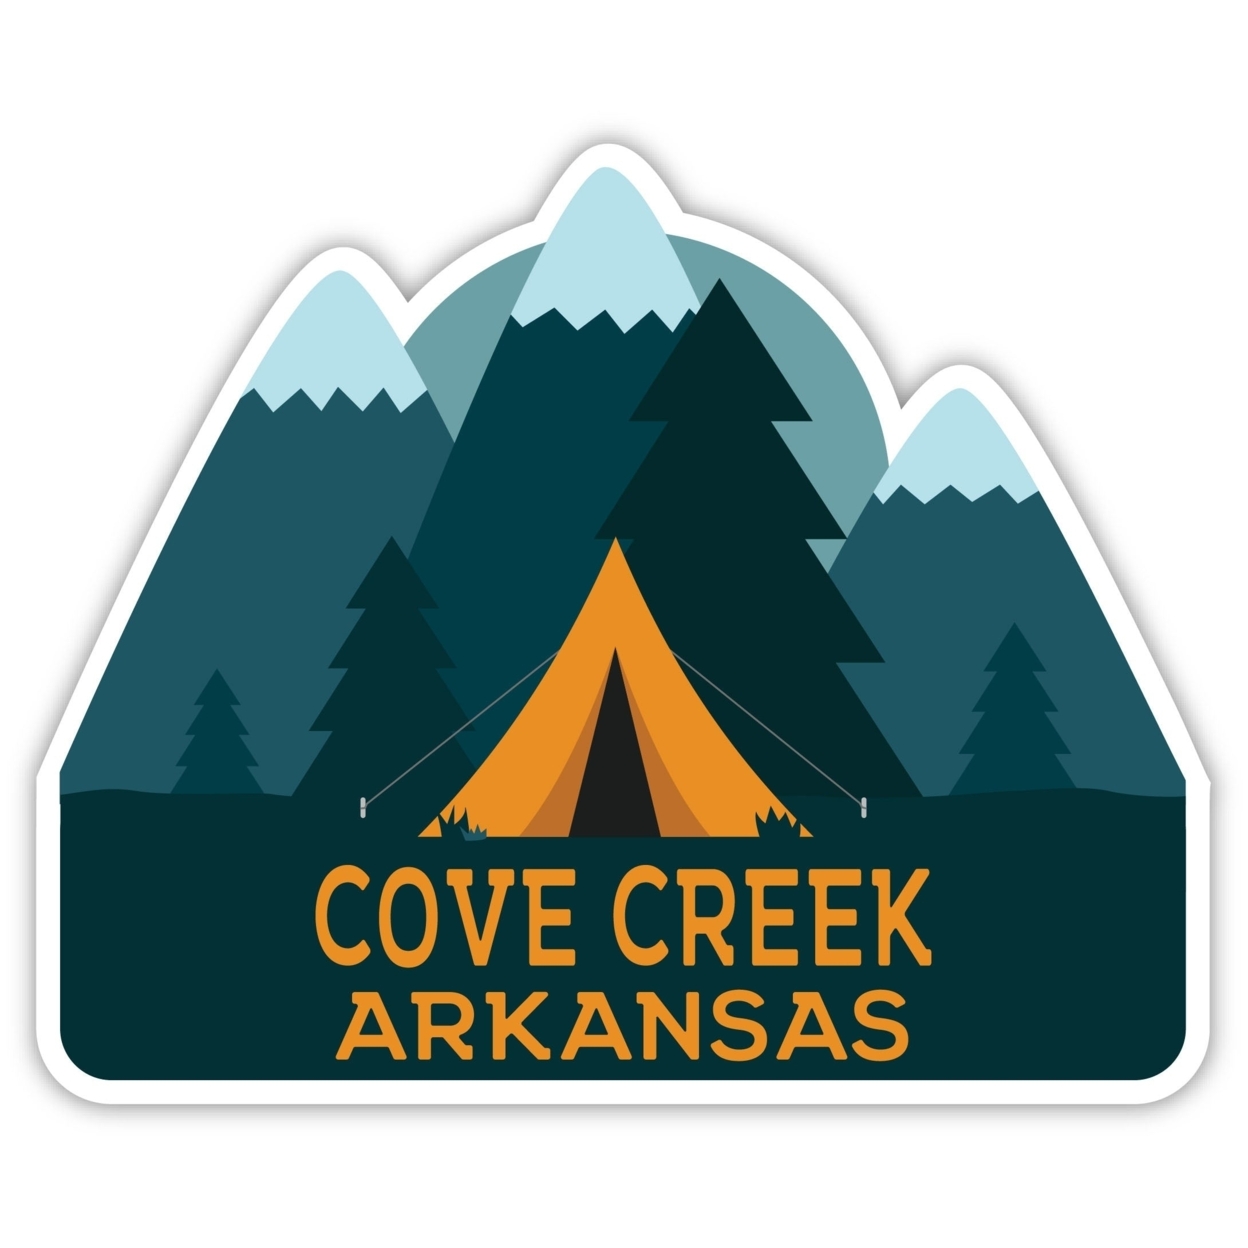 Cove Creek Arkansas Souvenir Decorative Stickers (Choose Theme And Size) - Single Unit, 10-Inch, Tent